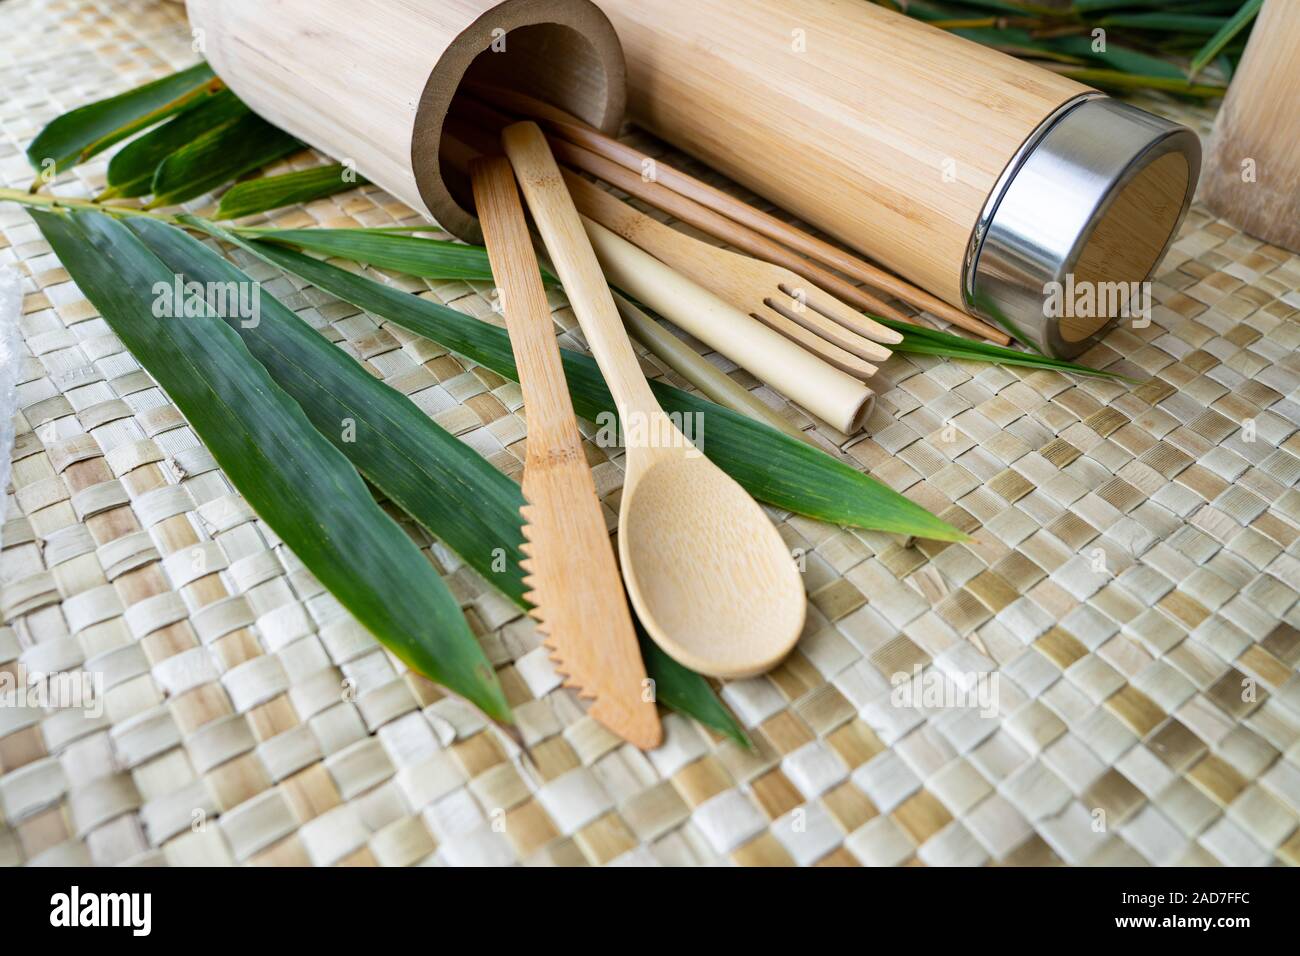 Un ensemble de couverts en bois biodégradables et tumbler potable,fait aux Philippines à partir de sources en bambou durable. Banque D'Images